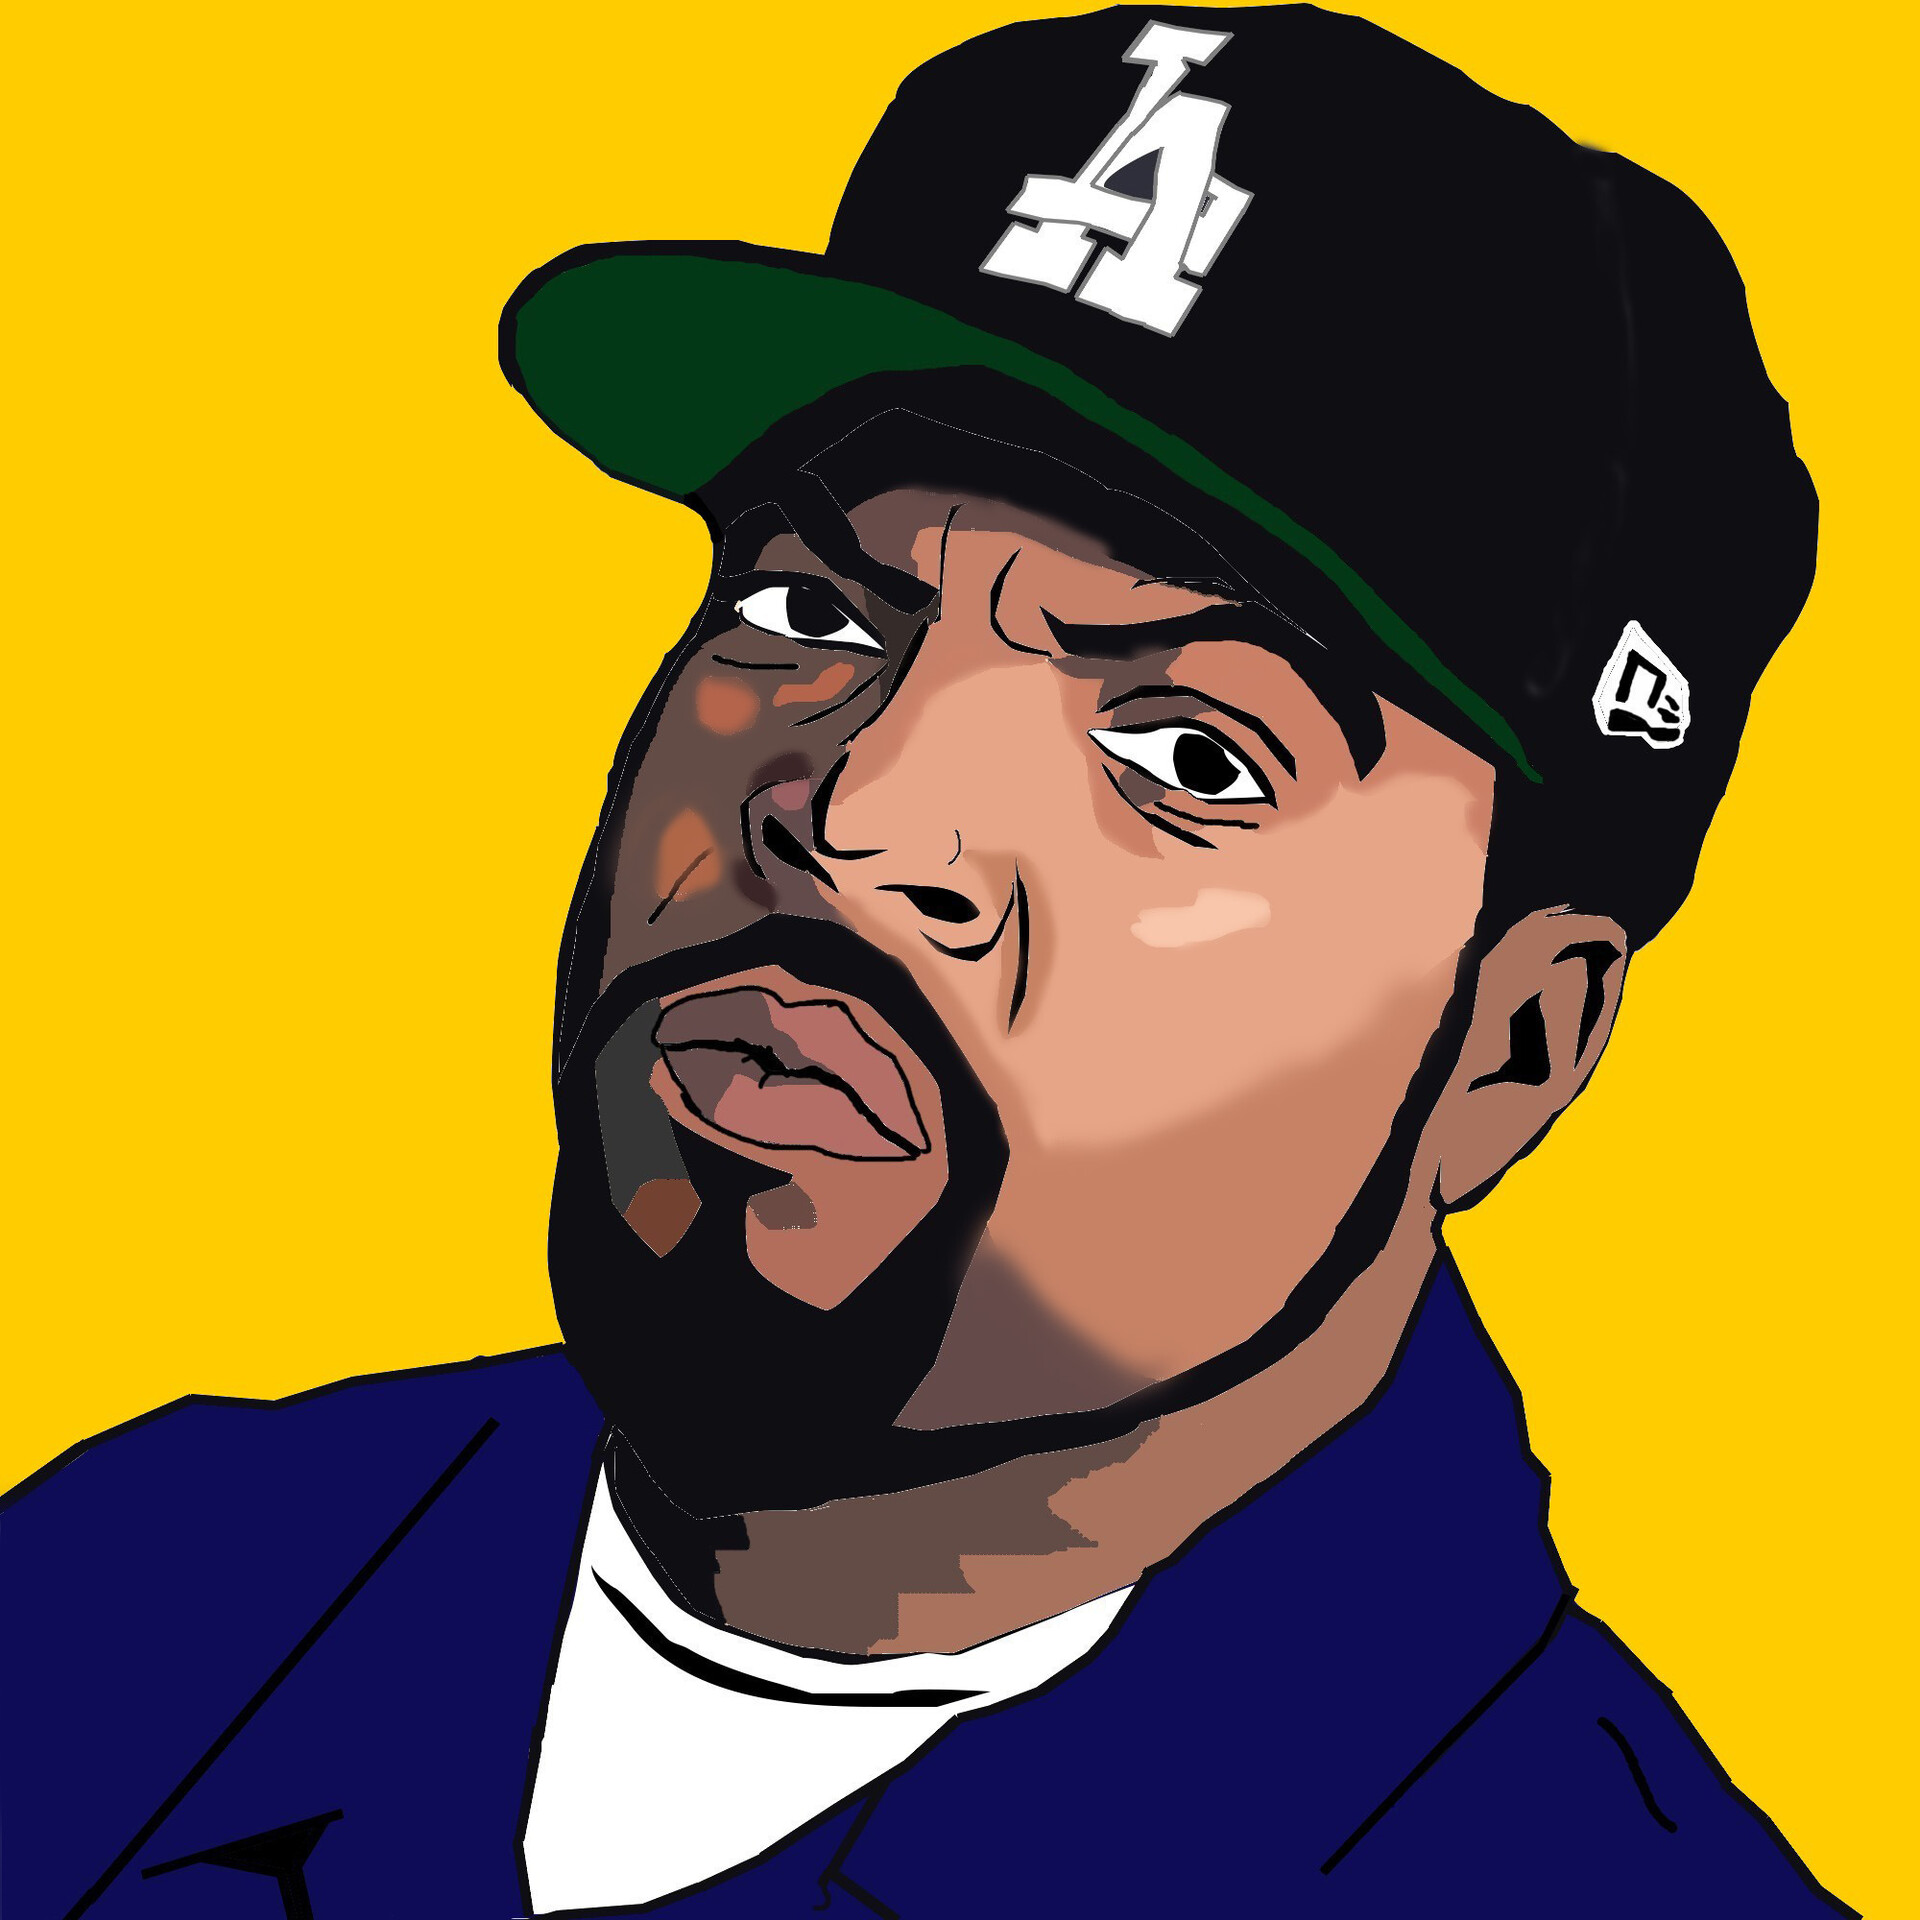 ArtStation - Ilustração Digital - Ice Cube